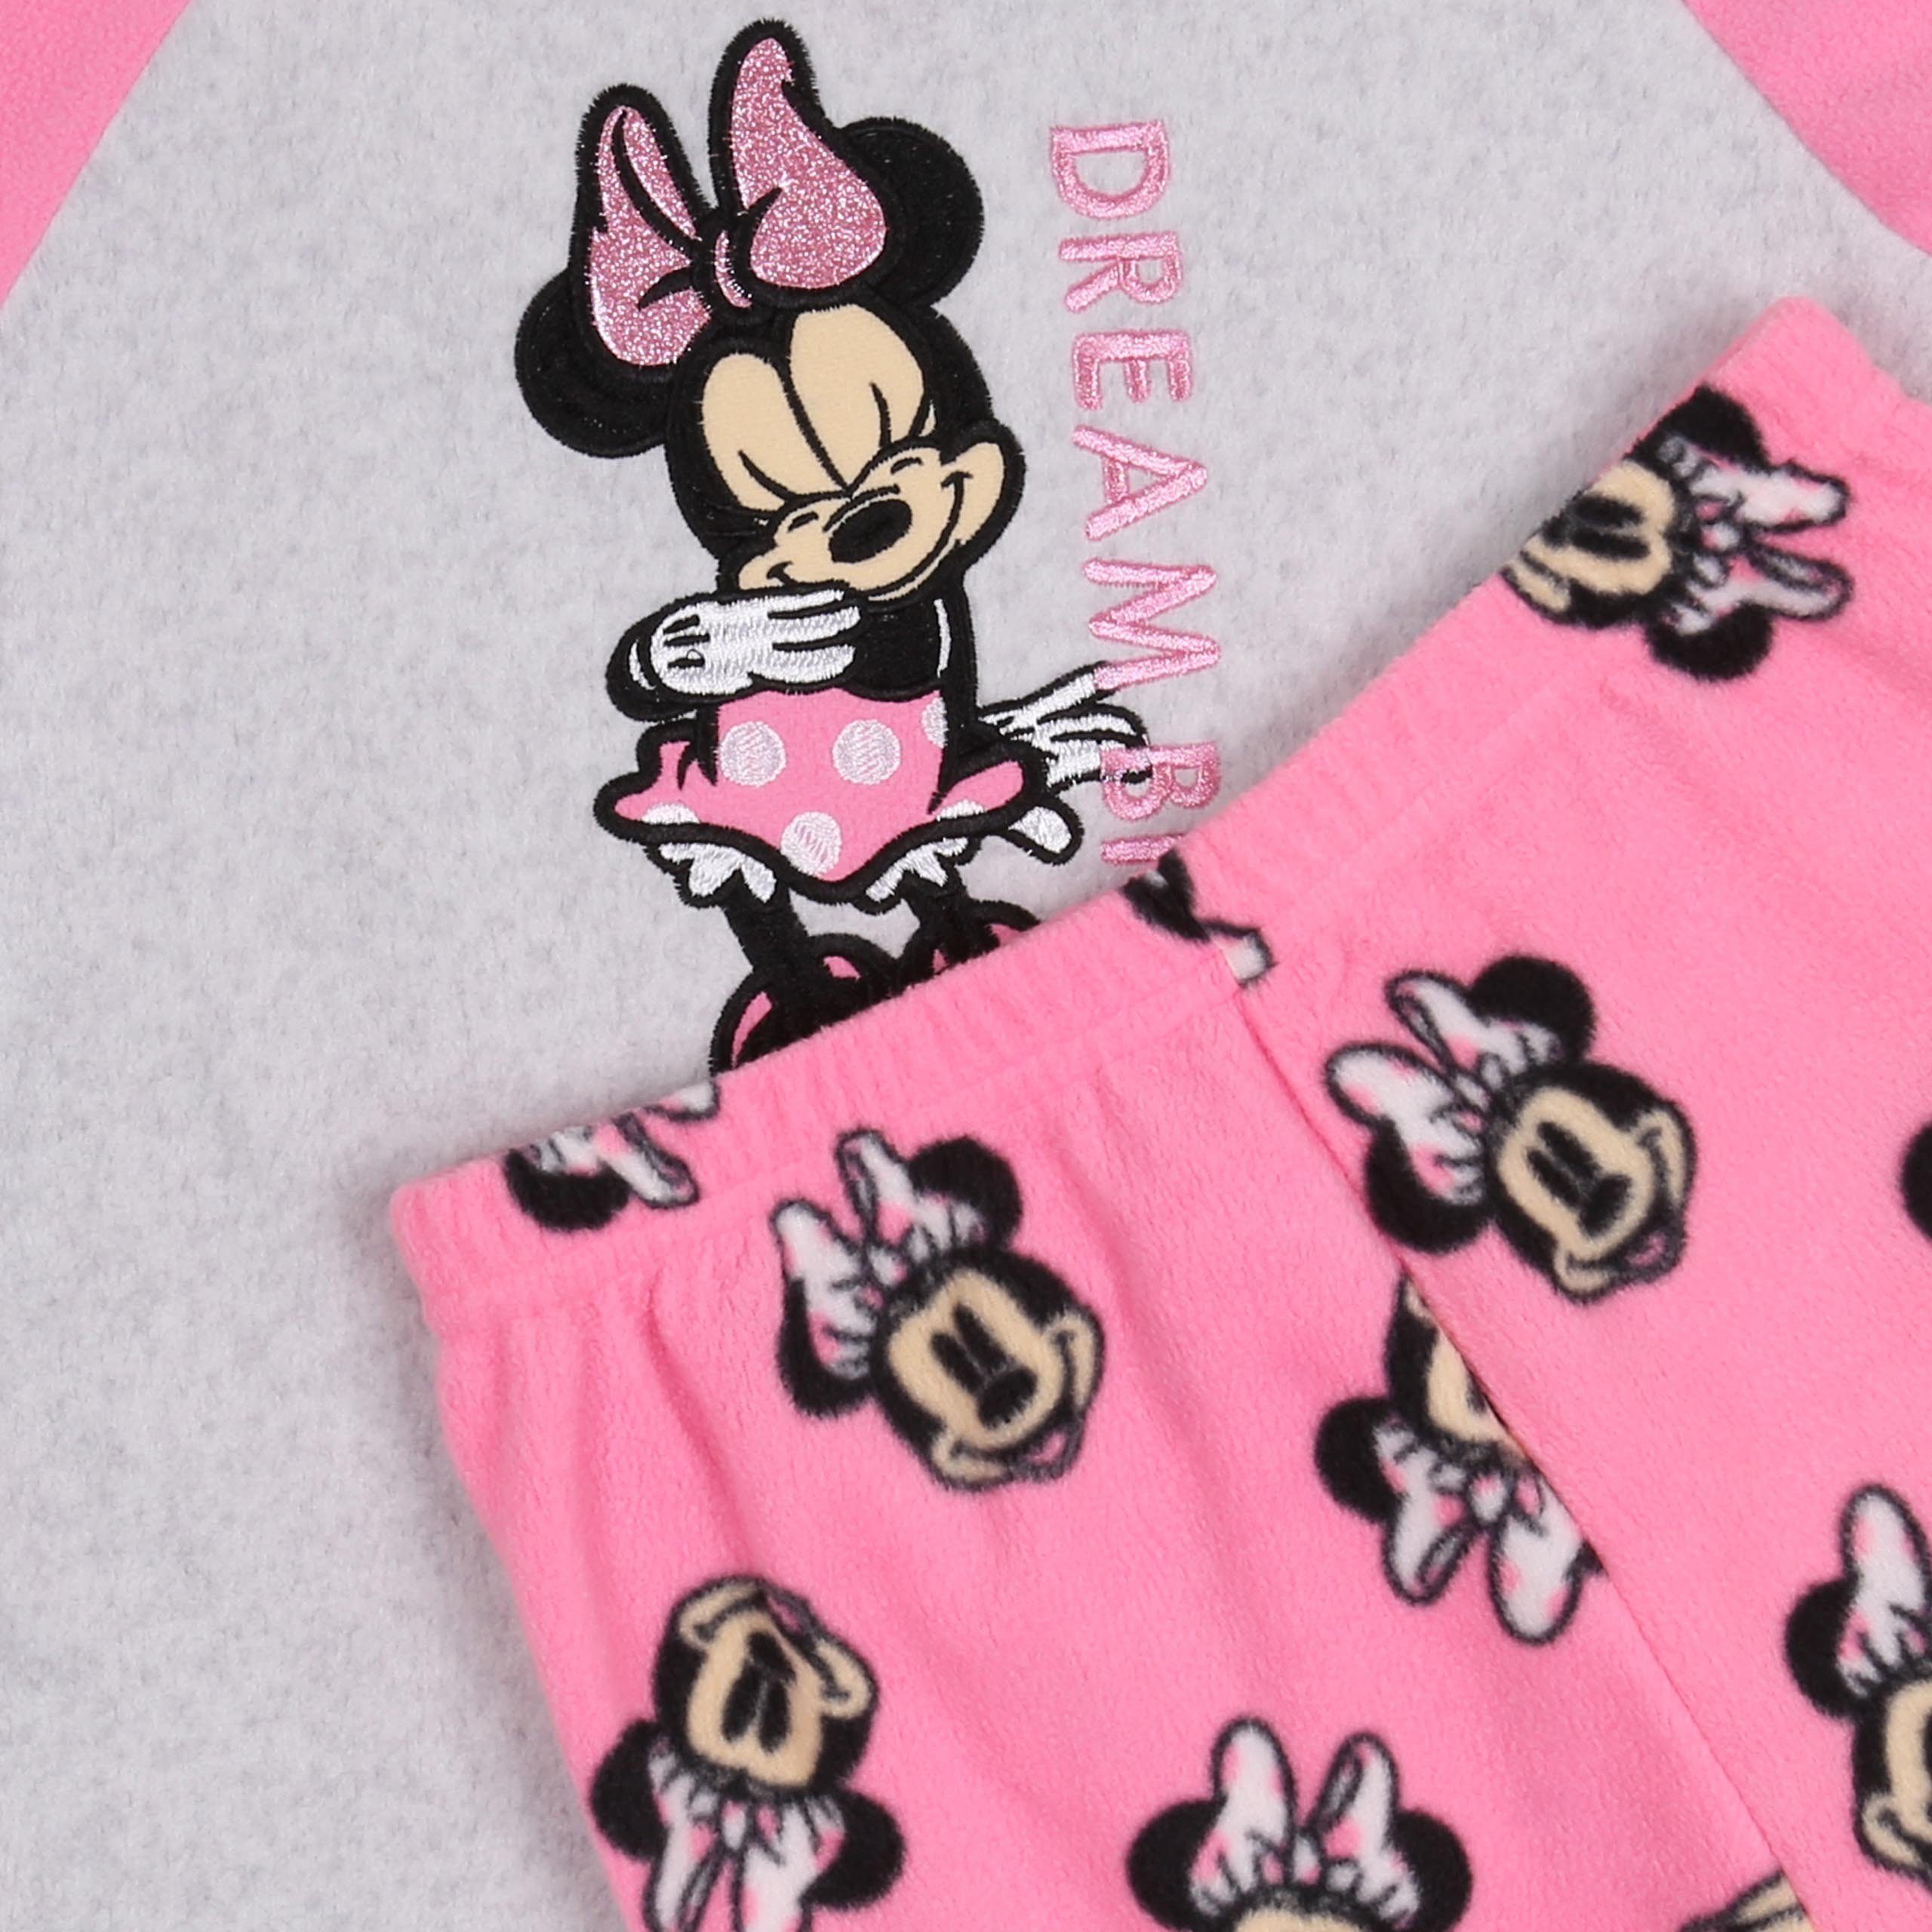 5-6 Jahre Schlafanzug pink-grau Maus DISNEY Schlafanzug, Mädchen Sarcia.eu Minnie